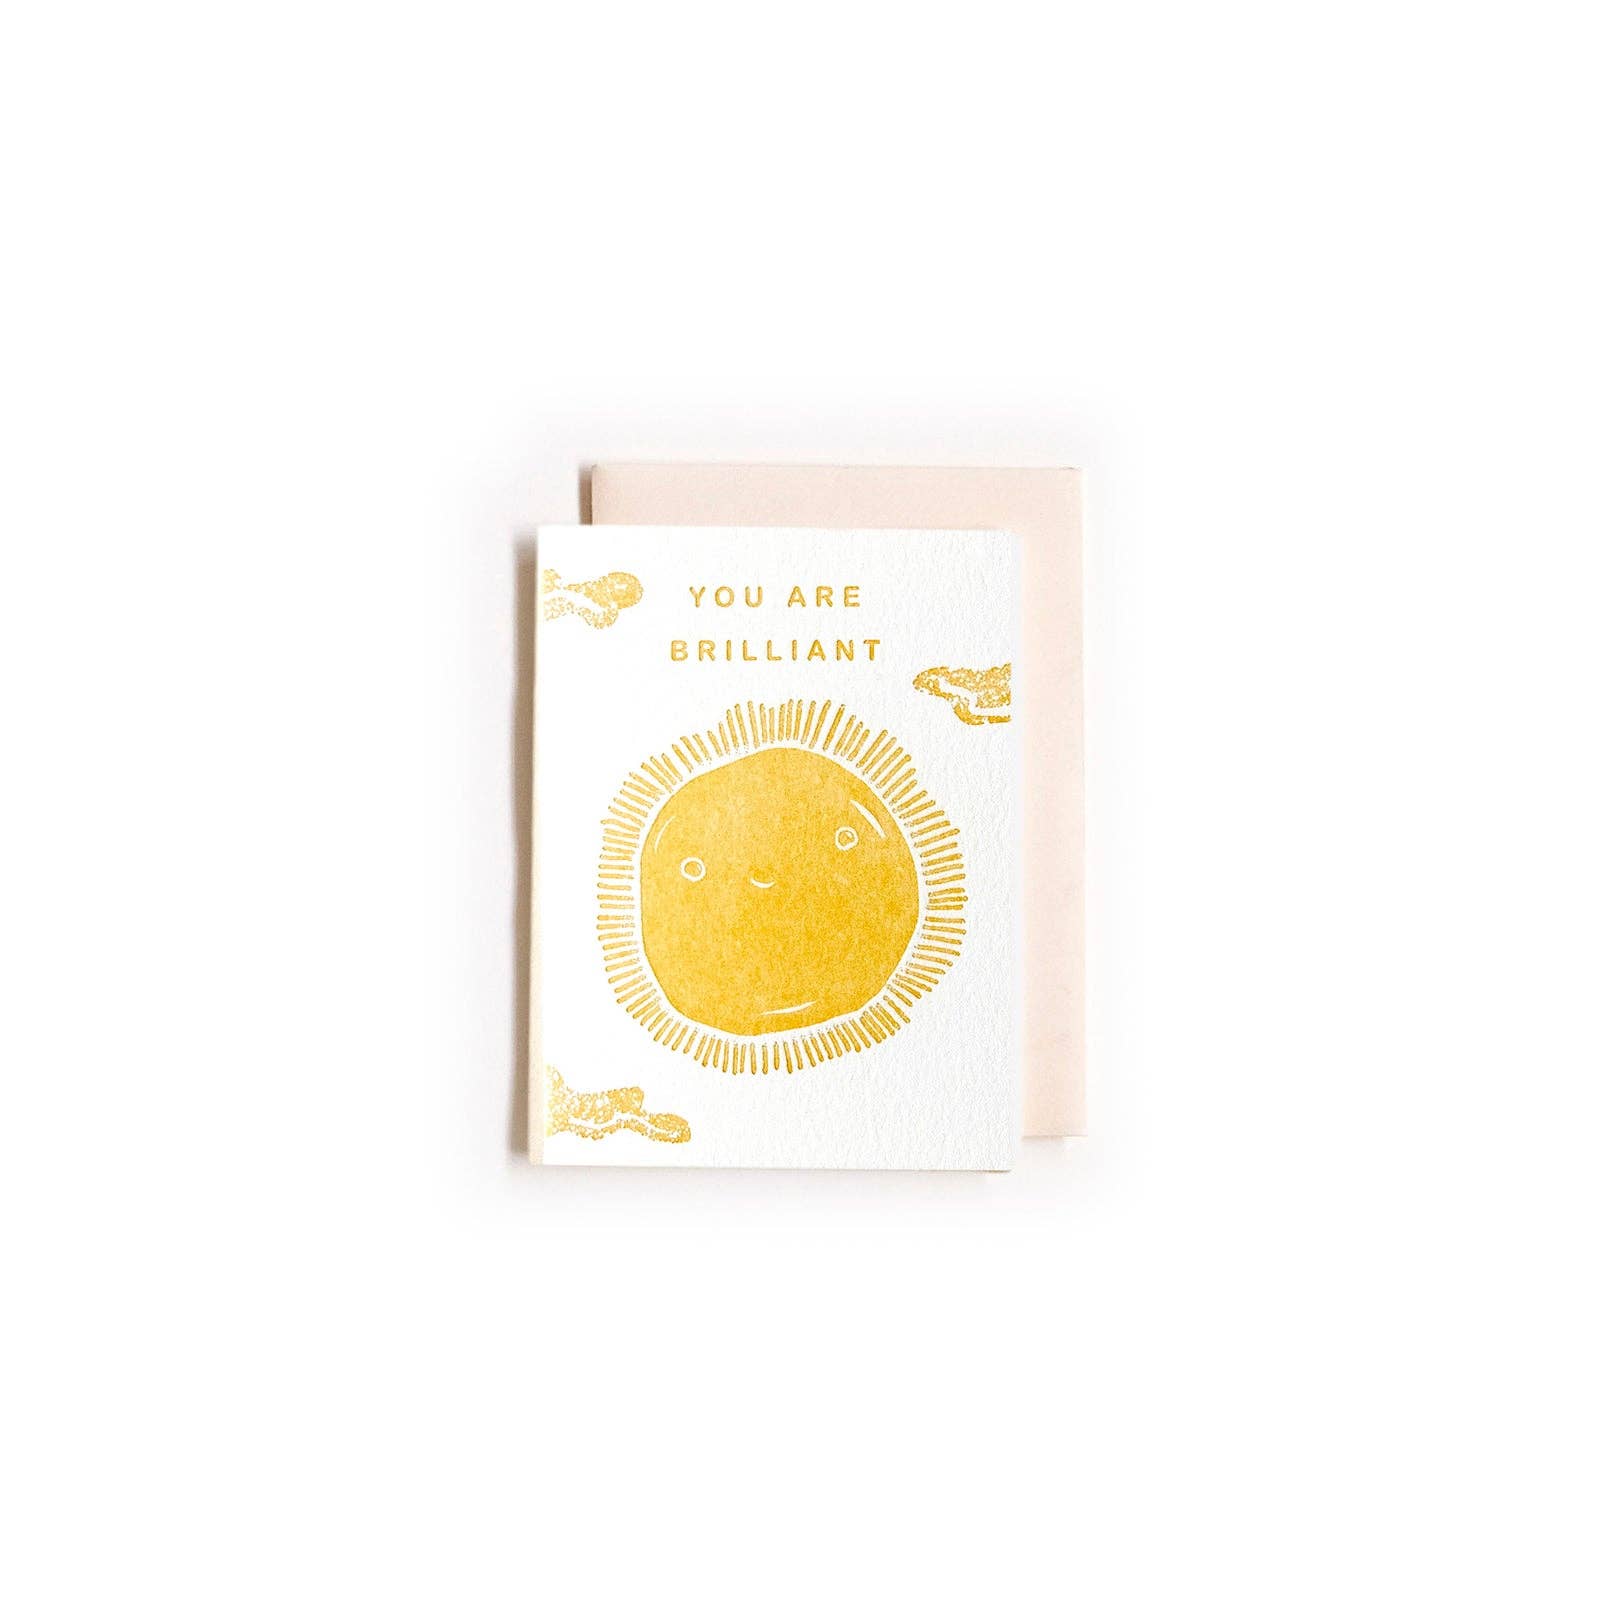 Brilliant Sun Mini Card